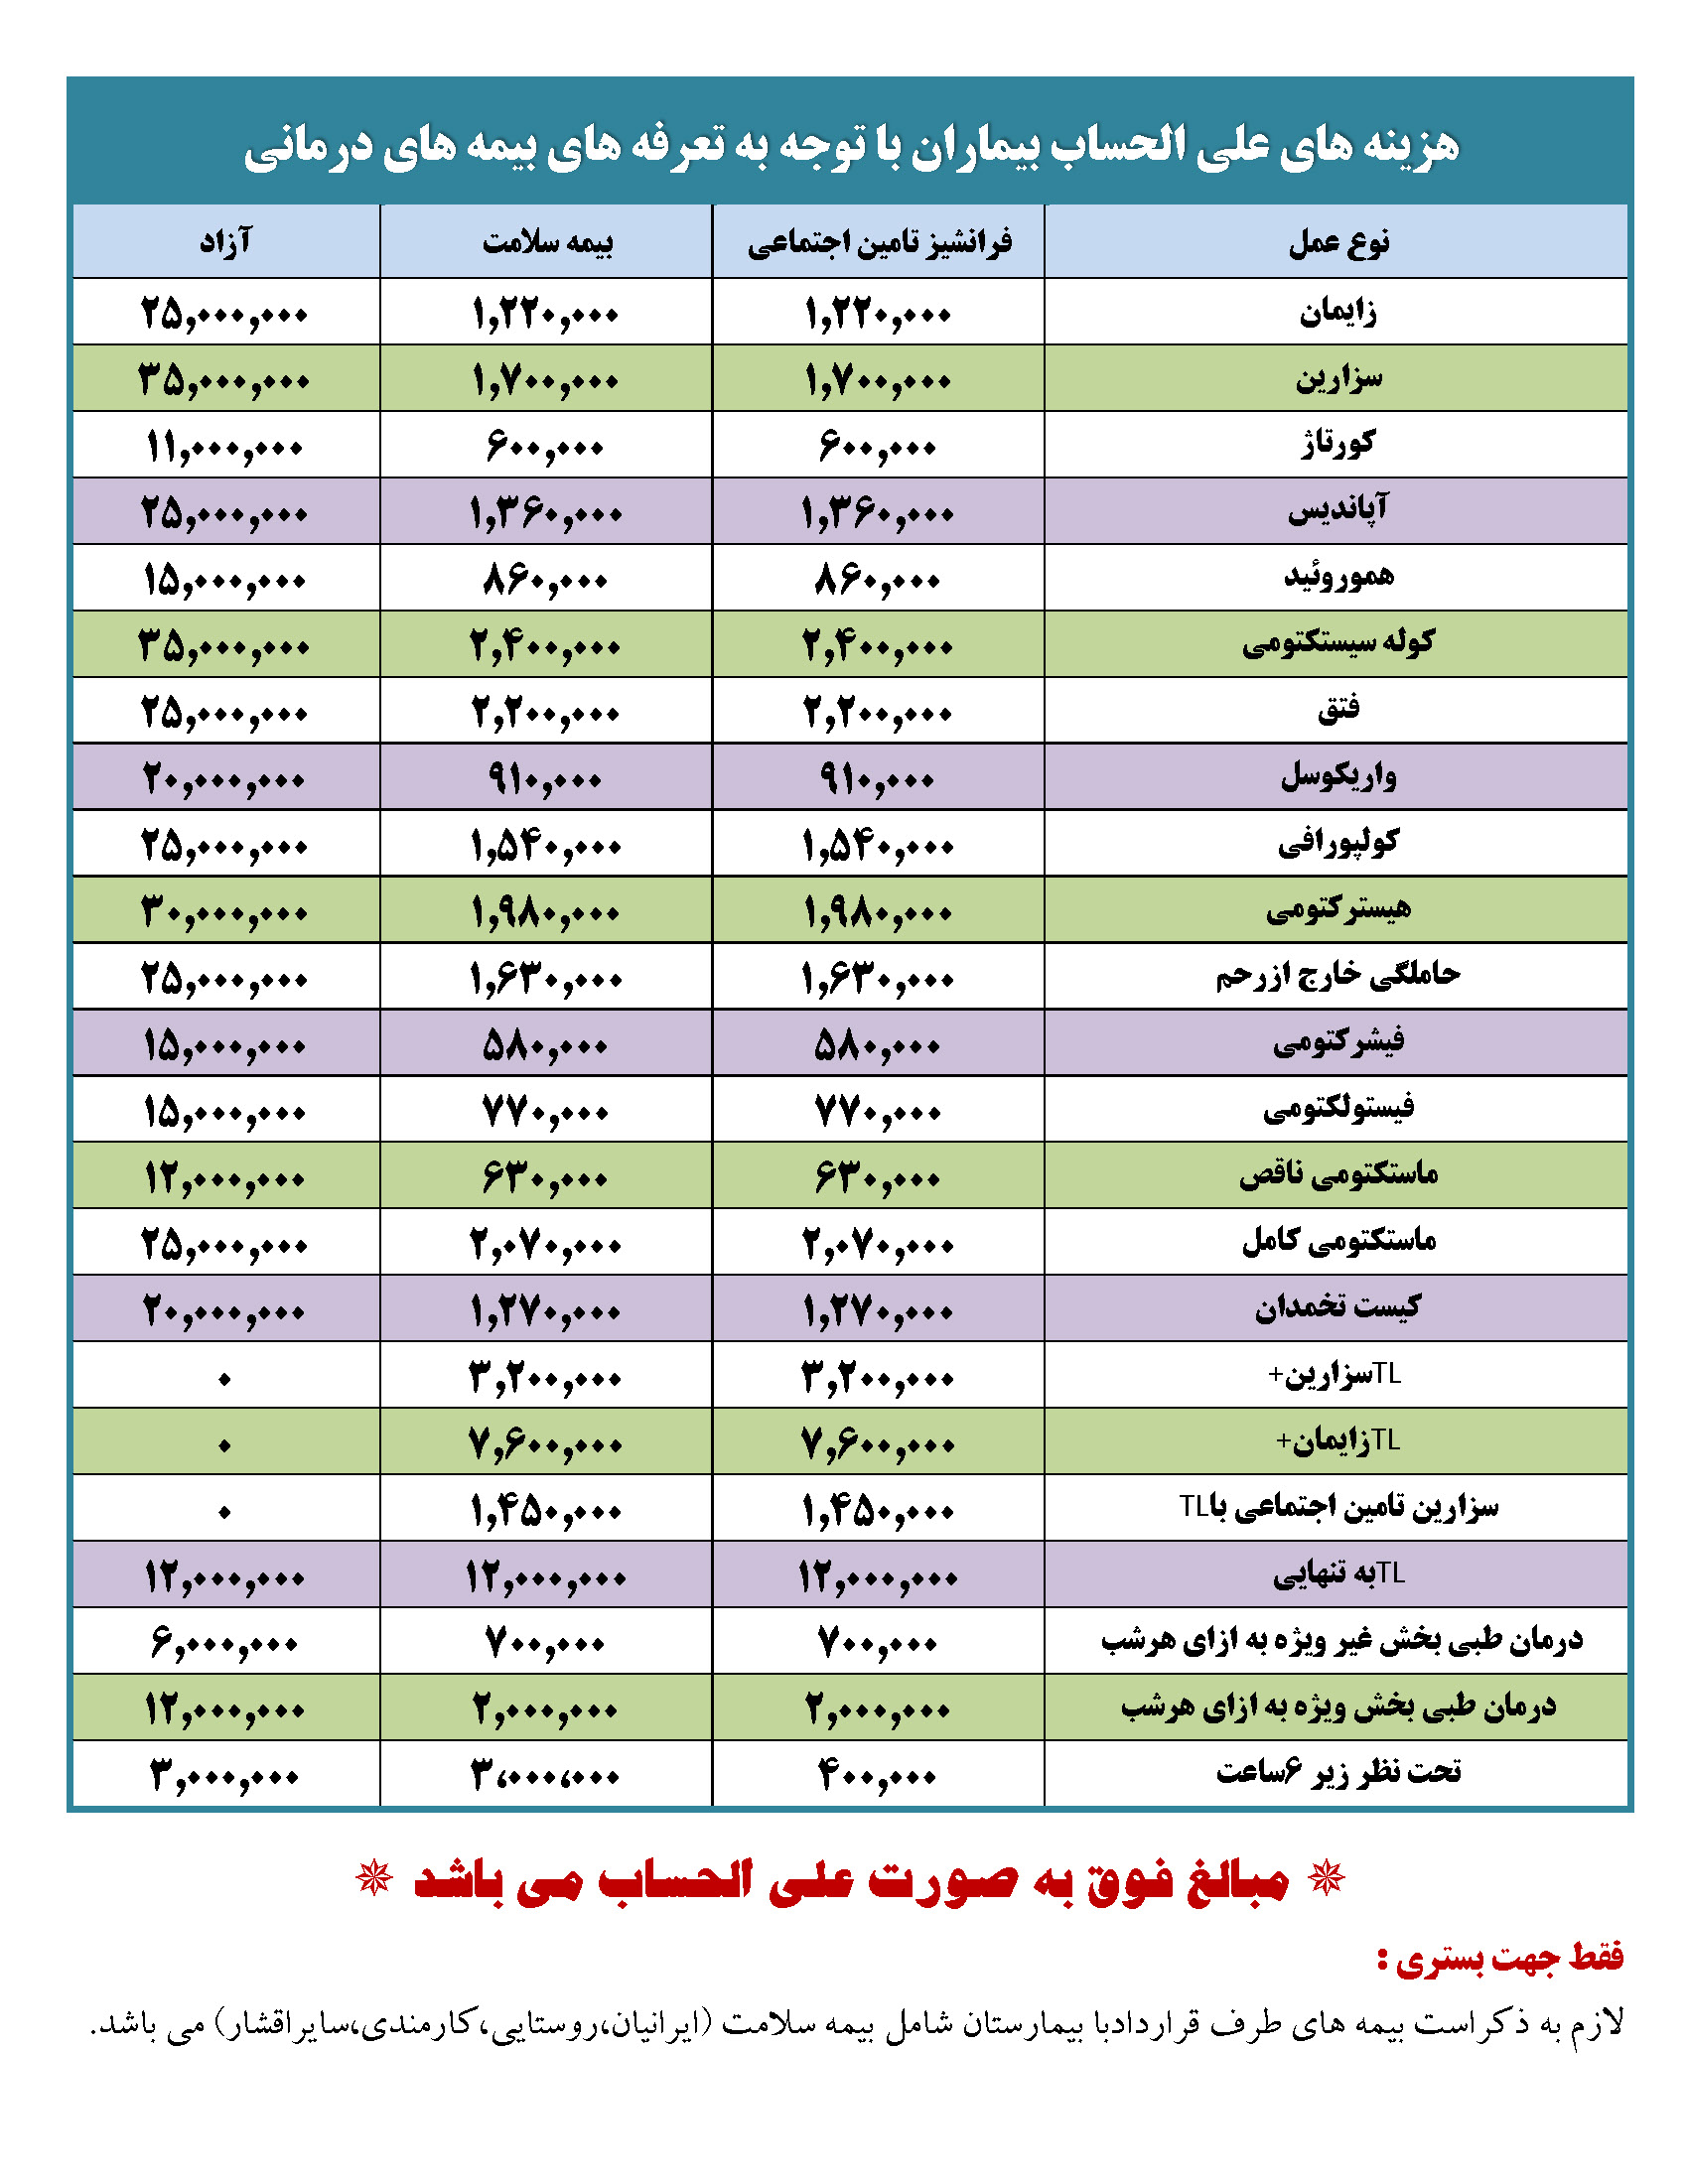 آدرس درمانگاه های تامین اجتماعی در مشهد
